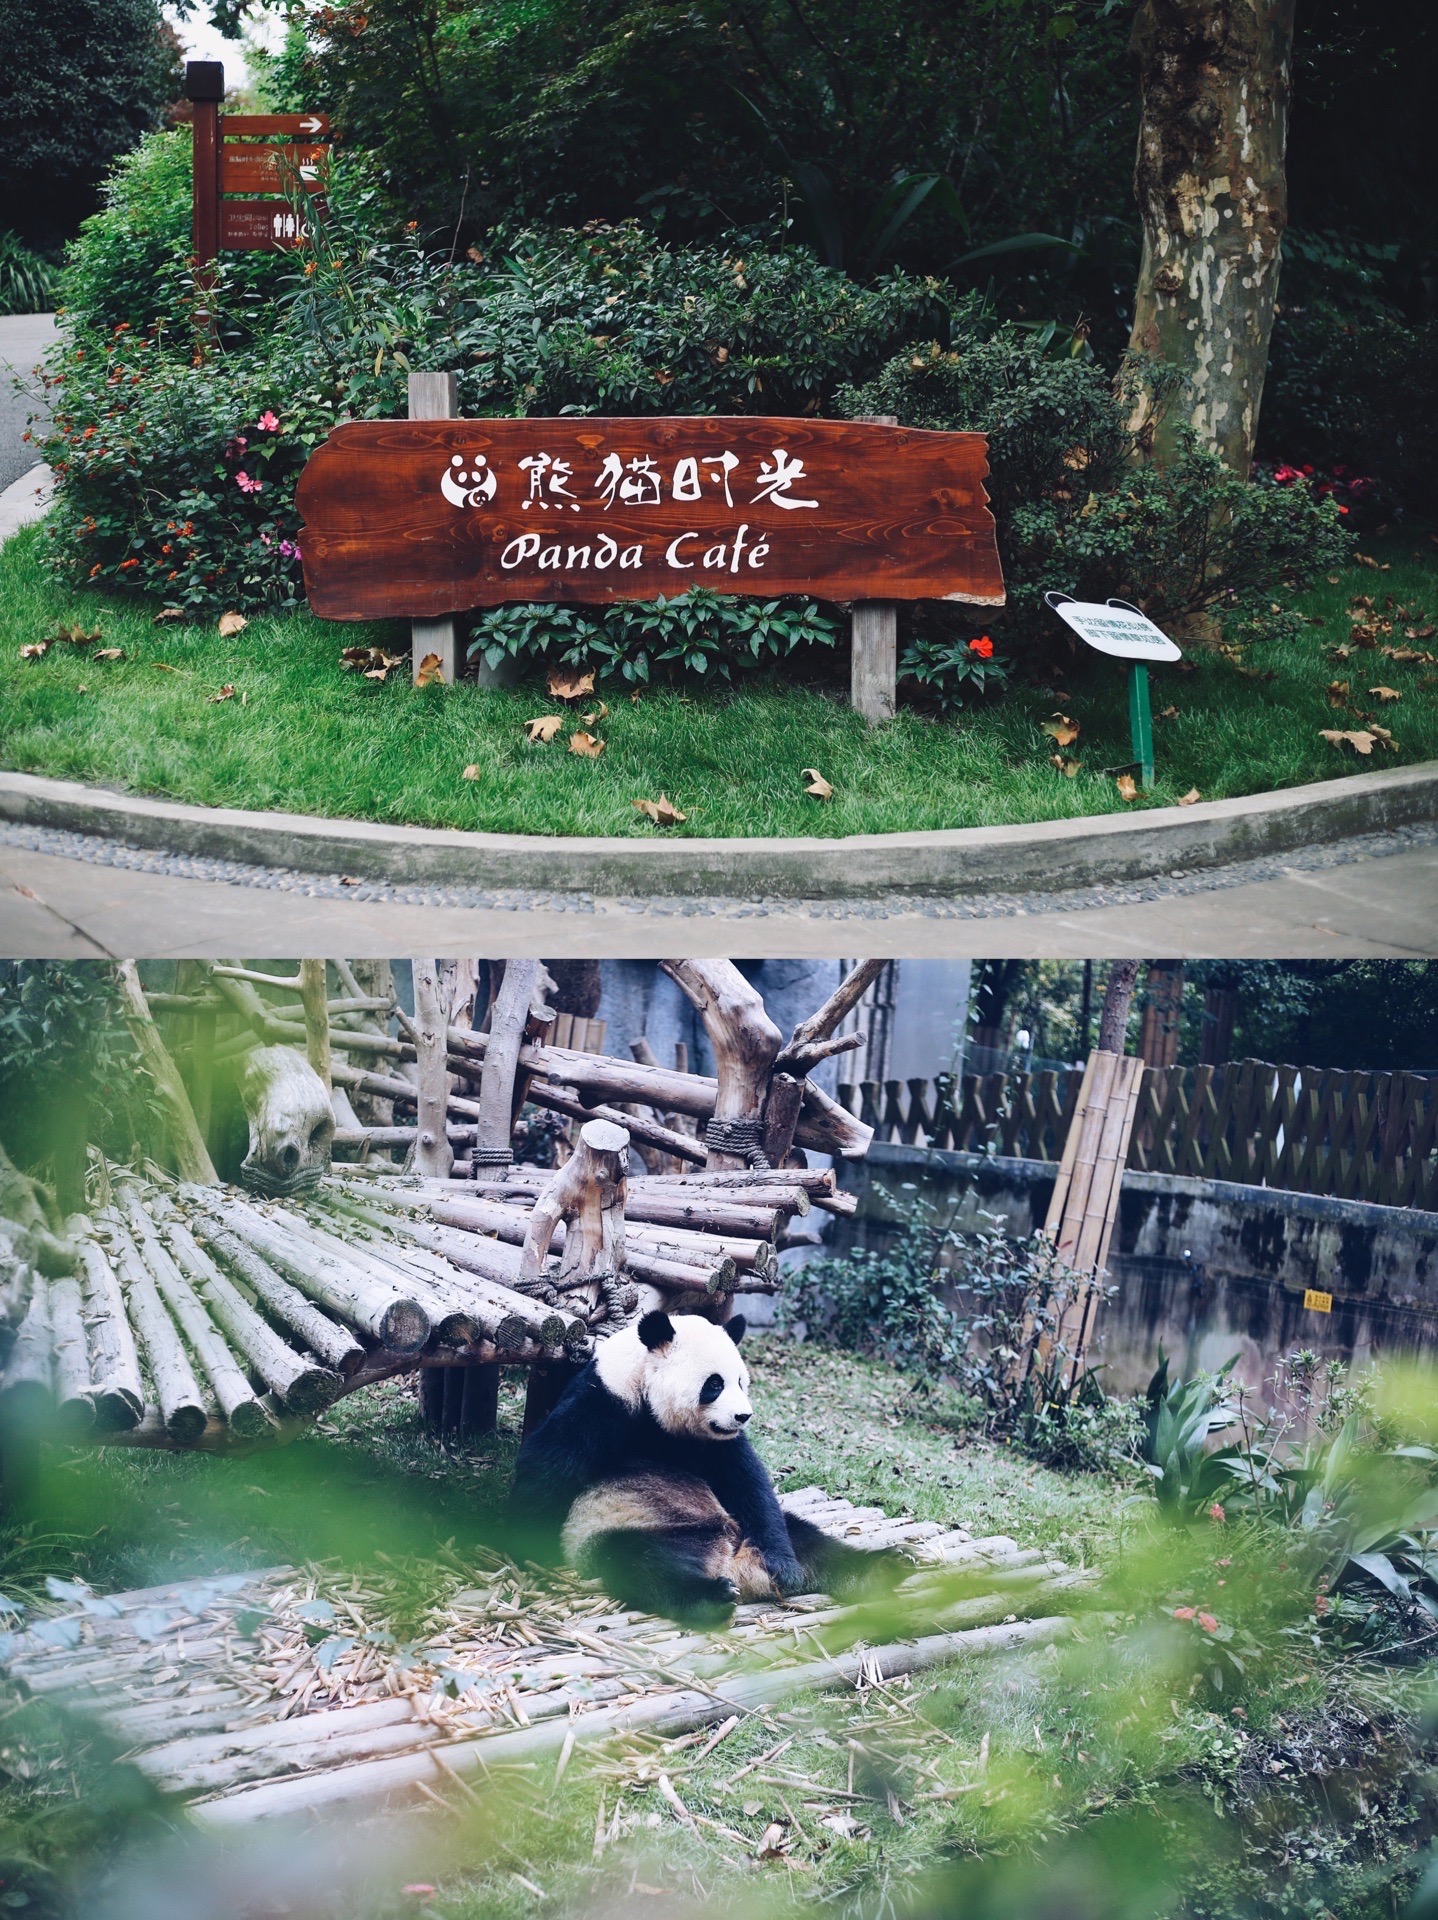 成都大熊猫基地，属于你的熊猫🐼时光💕 提起国宝大熊猫，大家都会爱心爆棚吧😄作为如此可爱的存在，熊猫宝